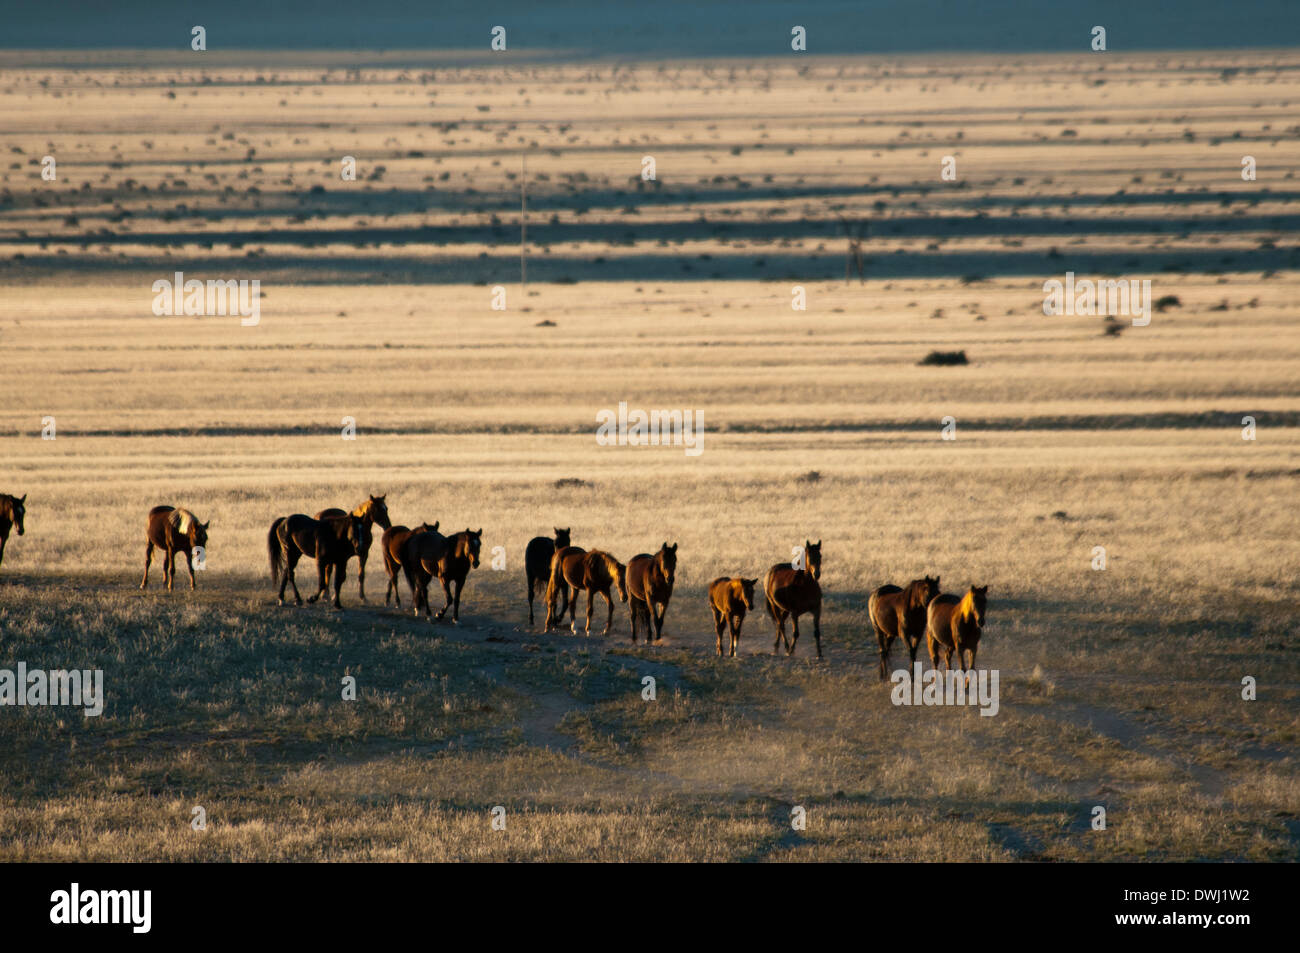 Una manada de caballos salvajes de Namibia, Equus ferus caballus, caminar en una línea en el abrevadero Garub en Aus, Namibia, África Foto de stock